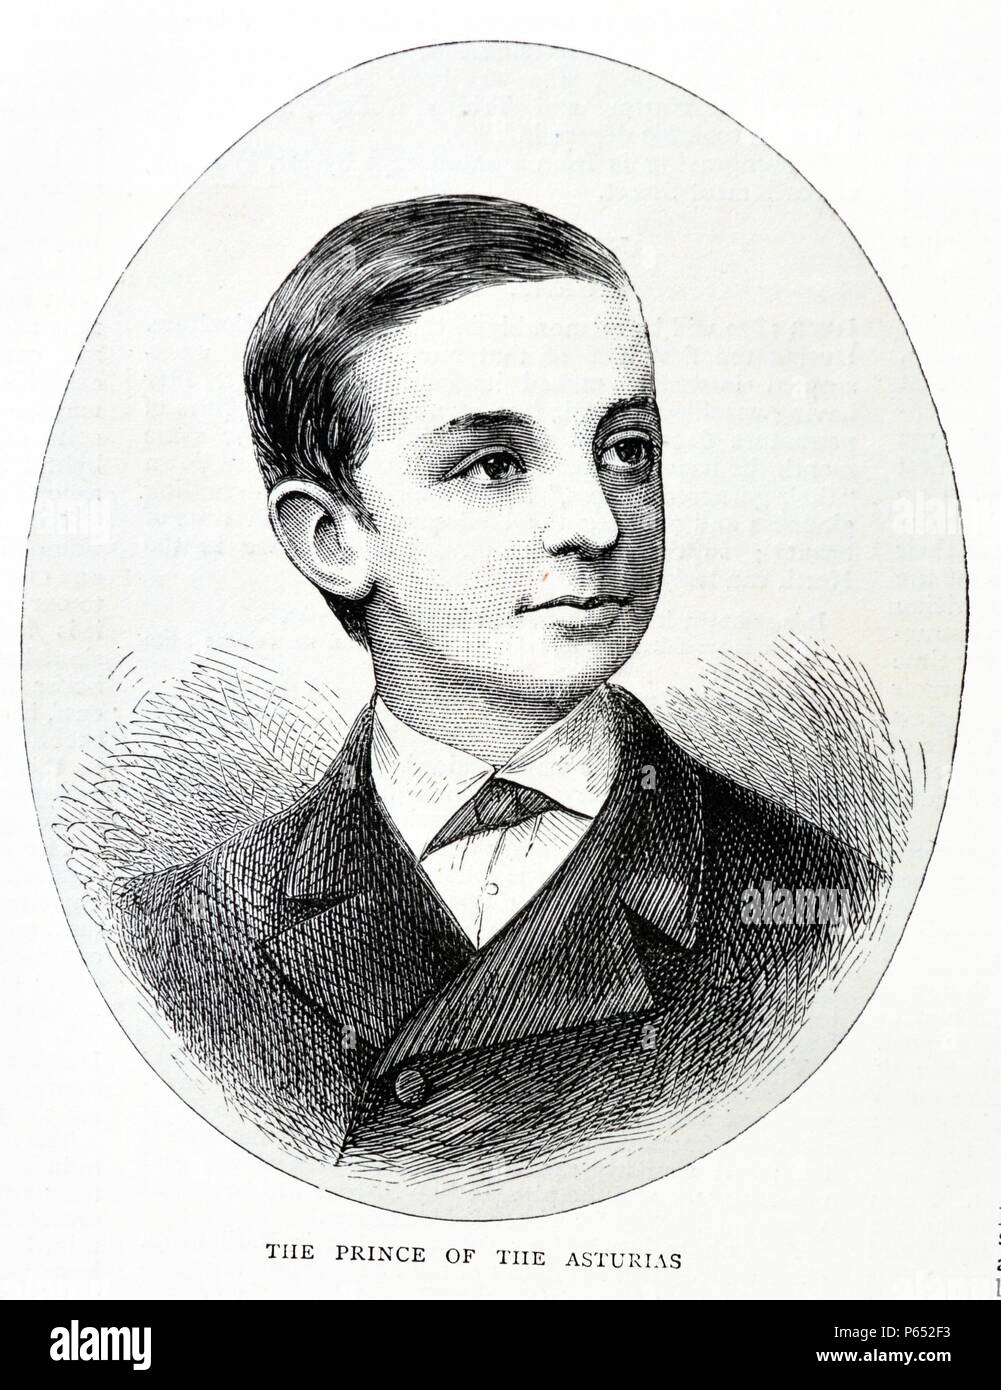 Gravure portrait du jeune prince Alphonse XII d'Espagne. Datée 1870 Banque D'Images